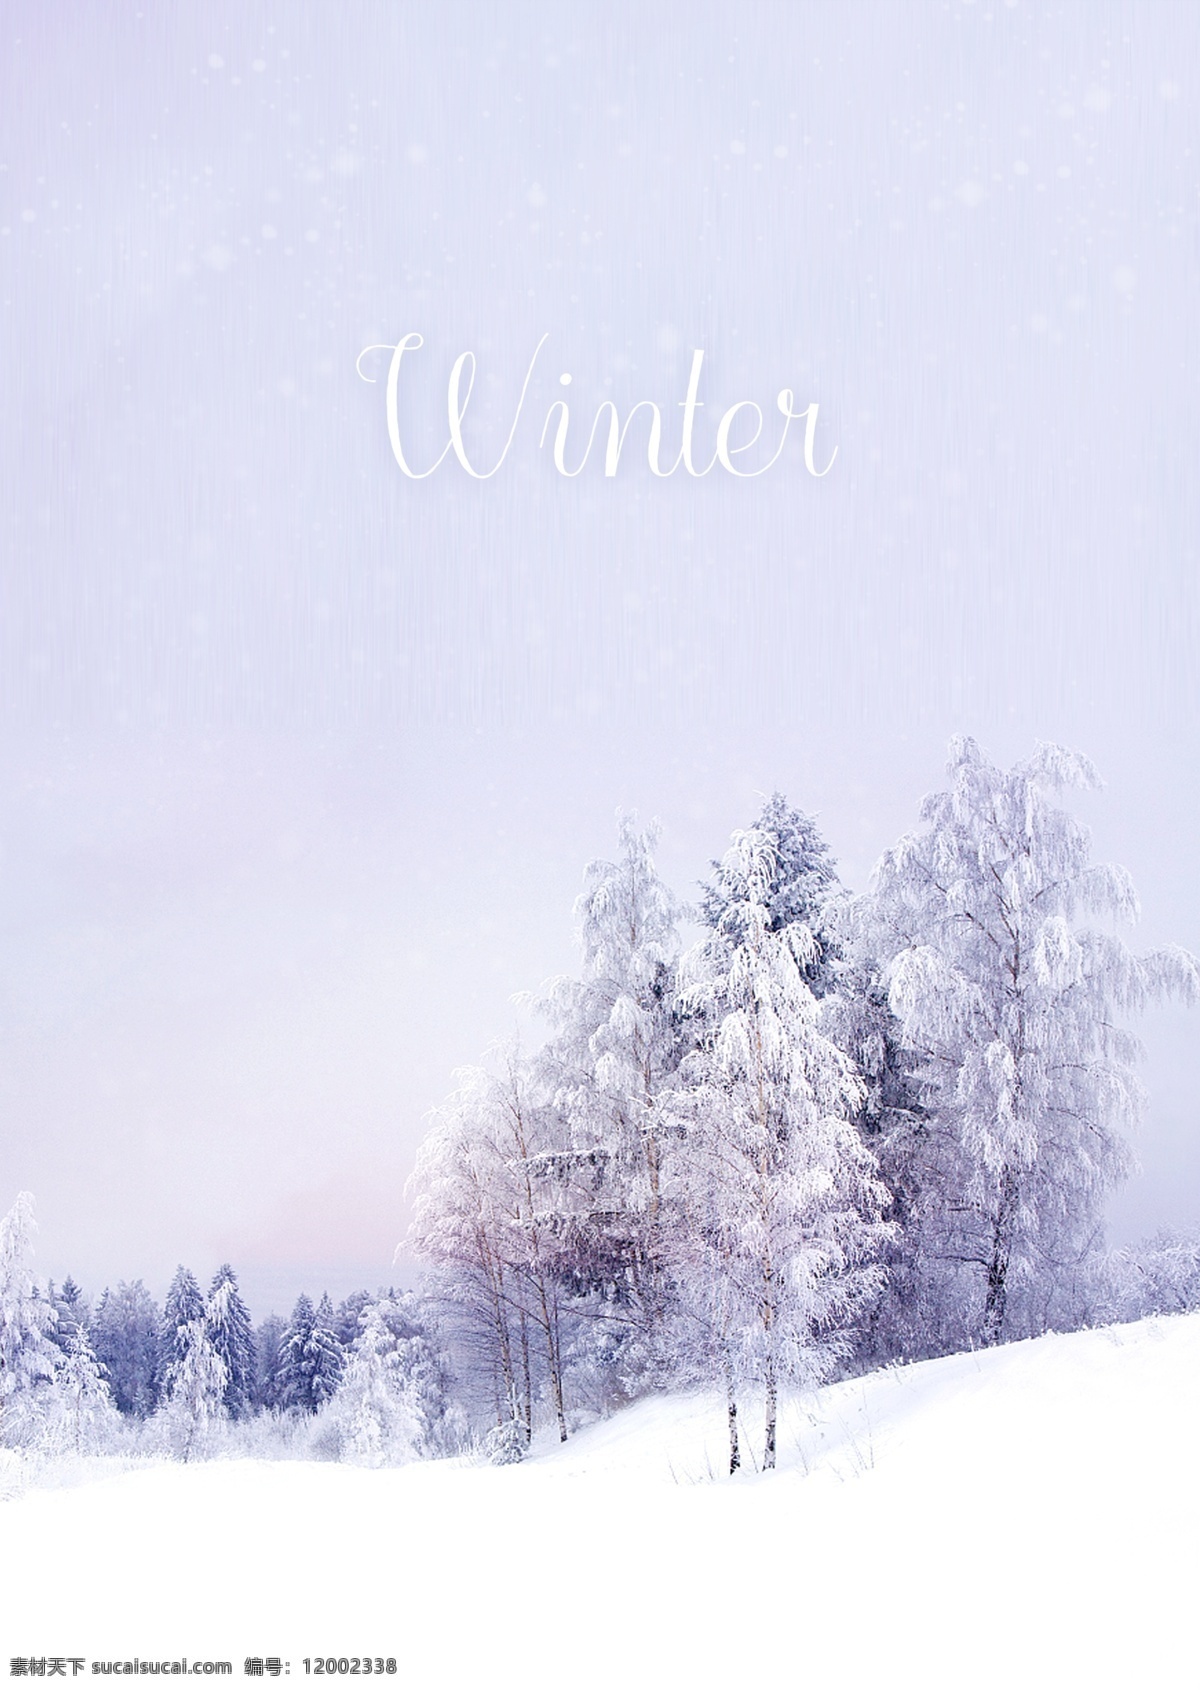 美丽 冬天 森林 大 眼睛 海报 壁纸 n 树 雪板 微光 漂亮 天子色 大雪